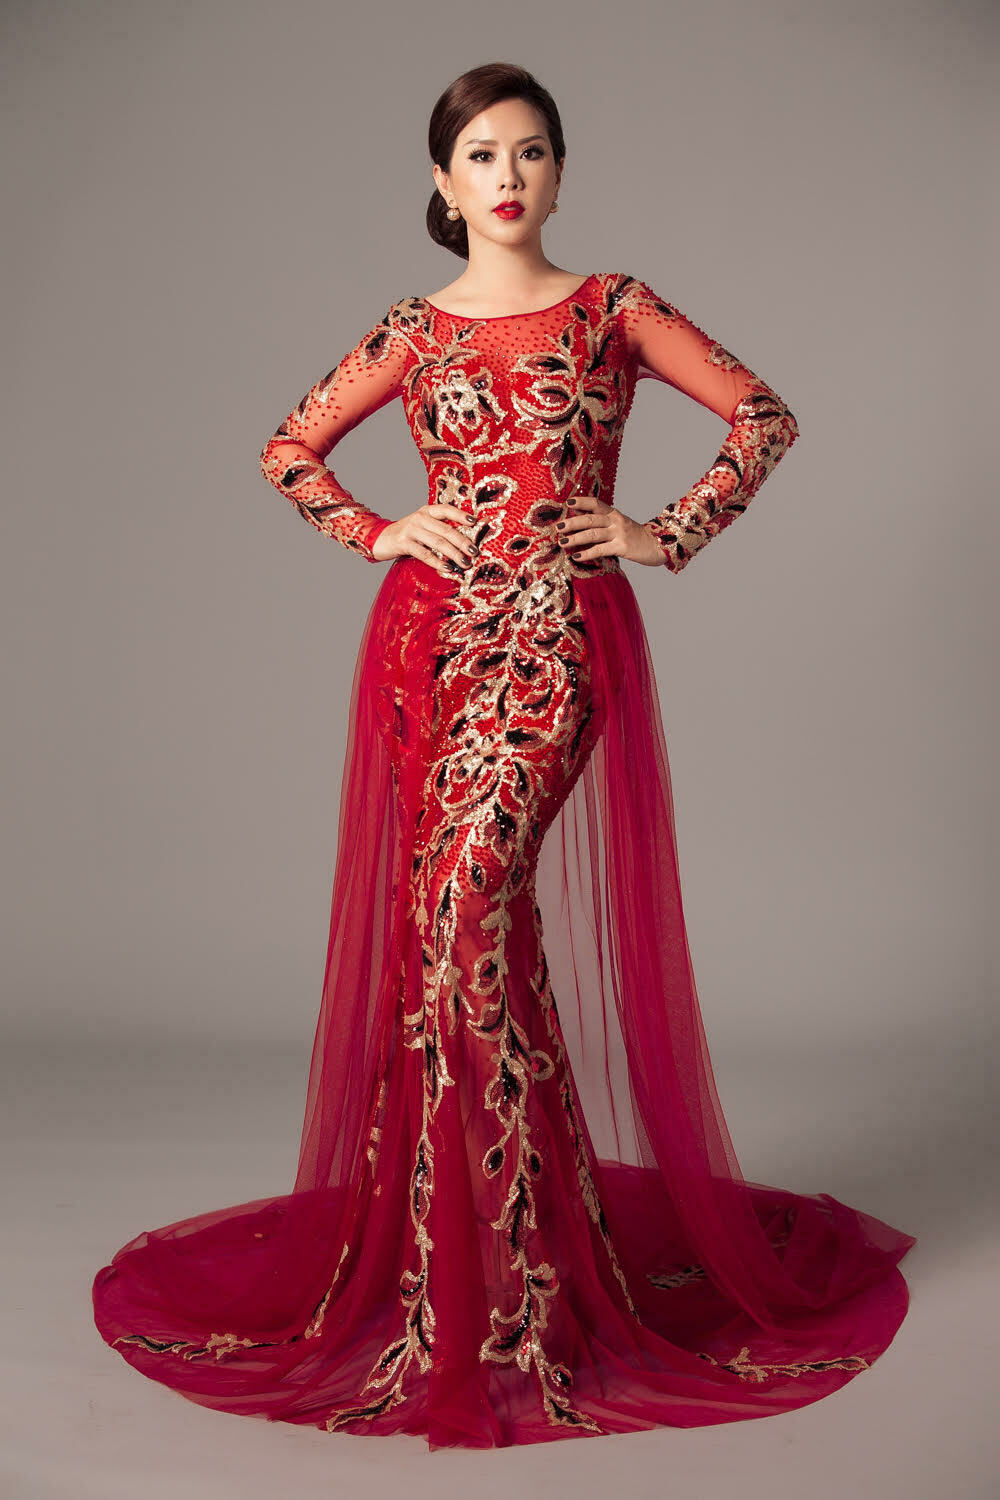 Hoa hậu Thu Hoài khoe đường cong gợi cảm với váy đuôi cá